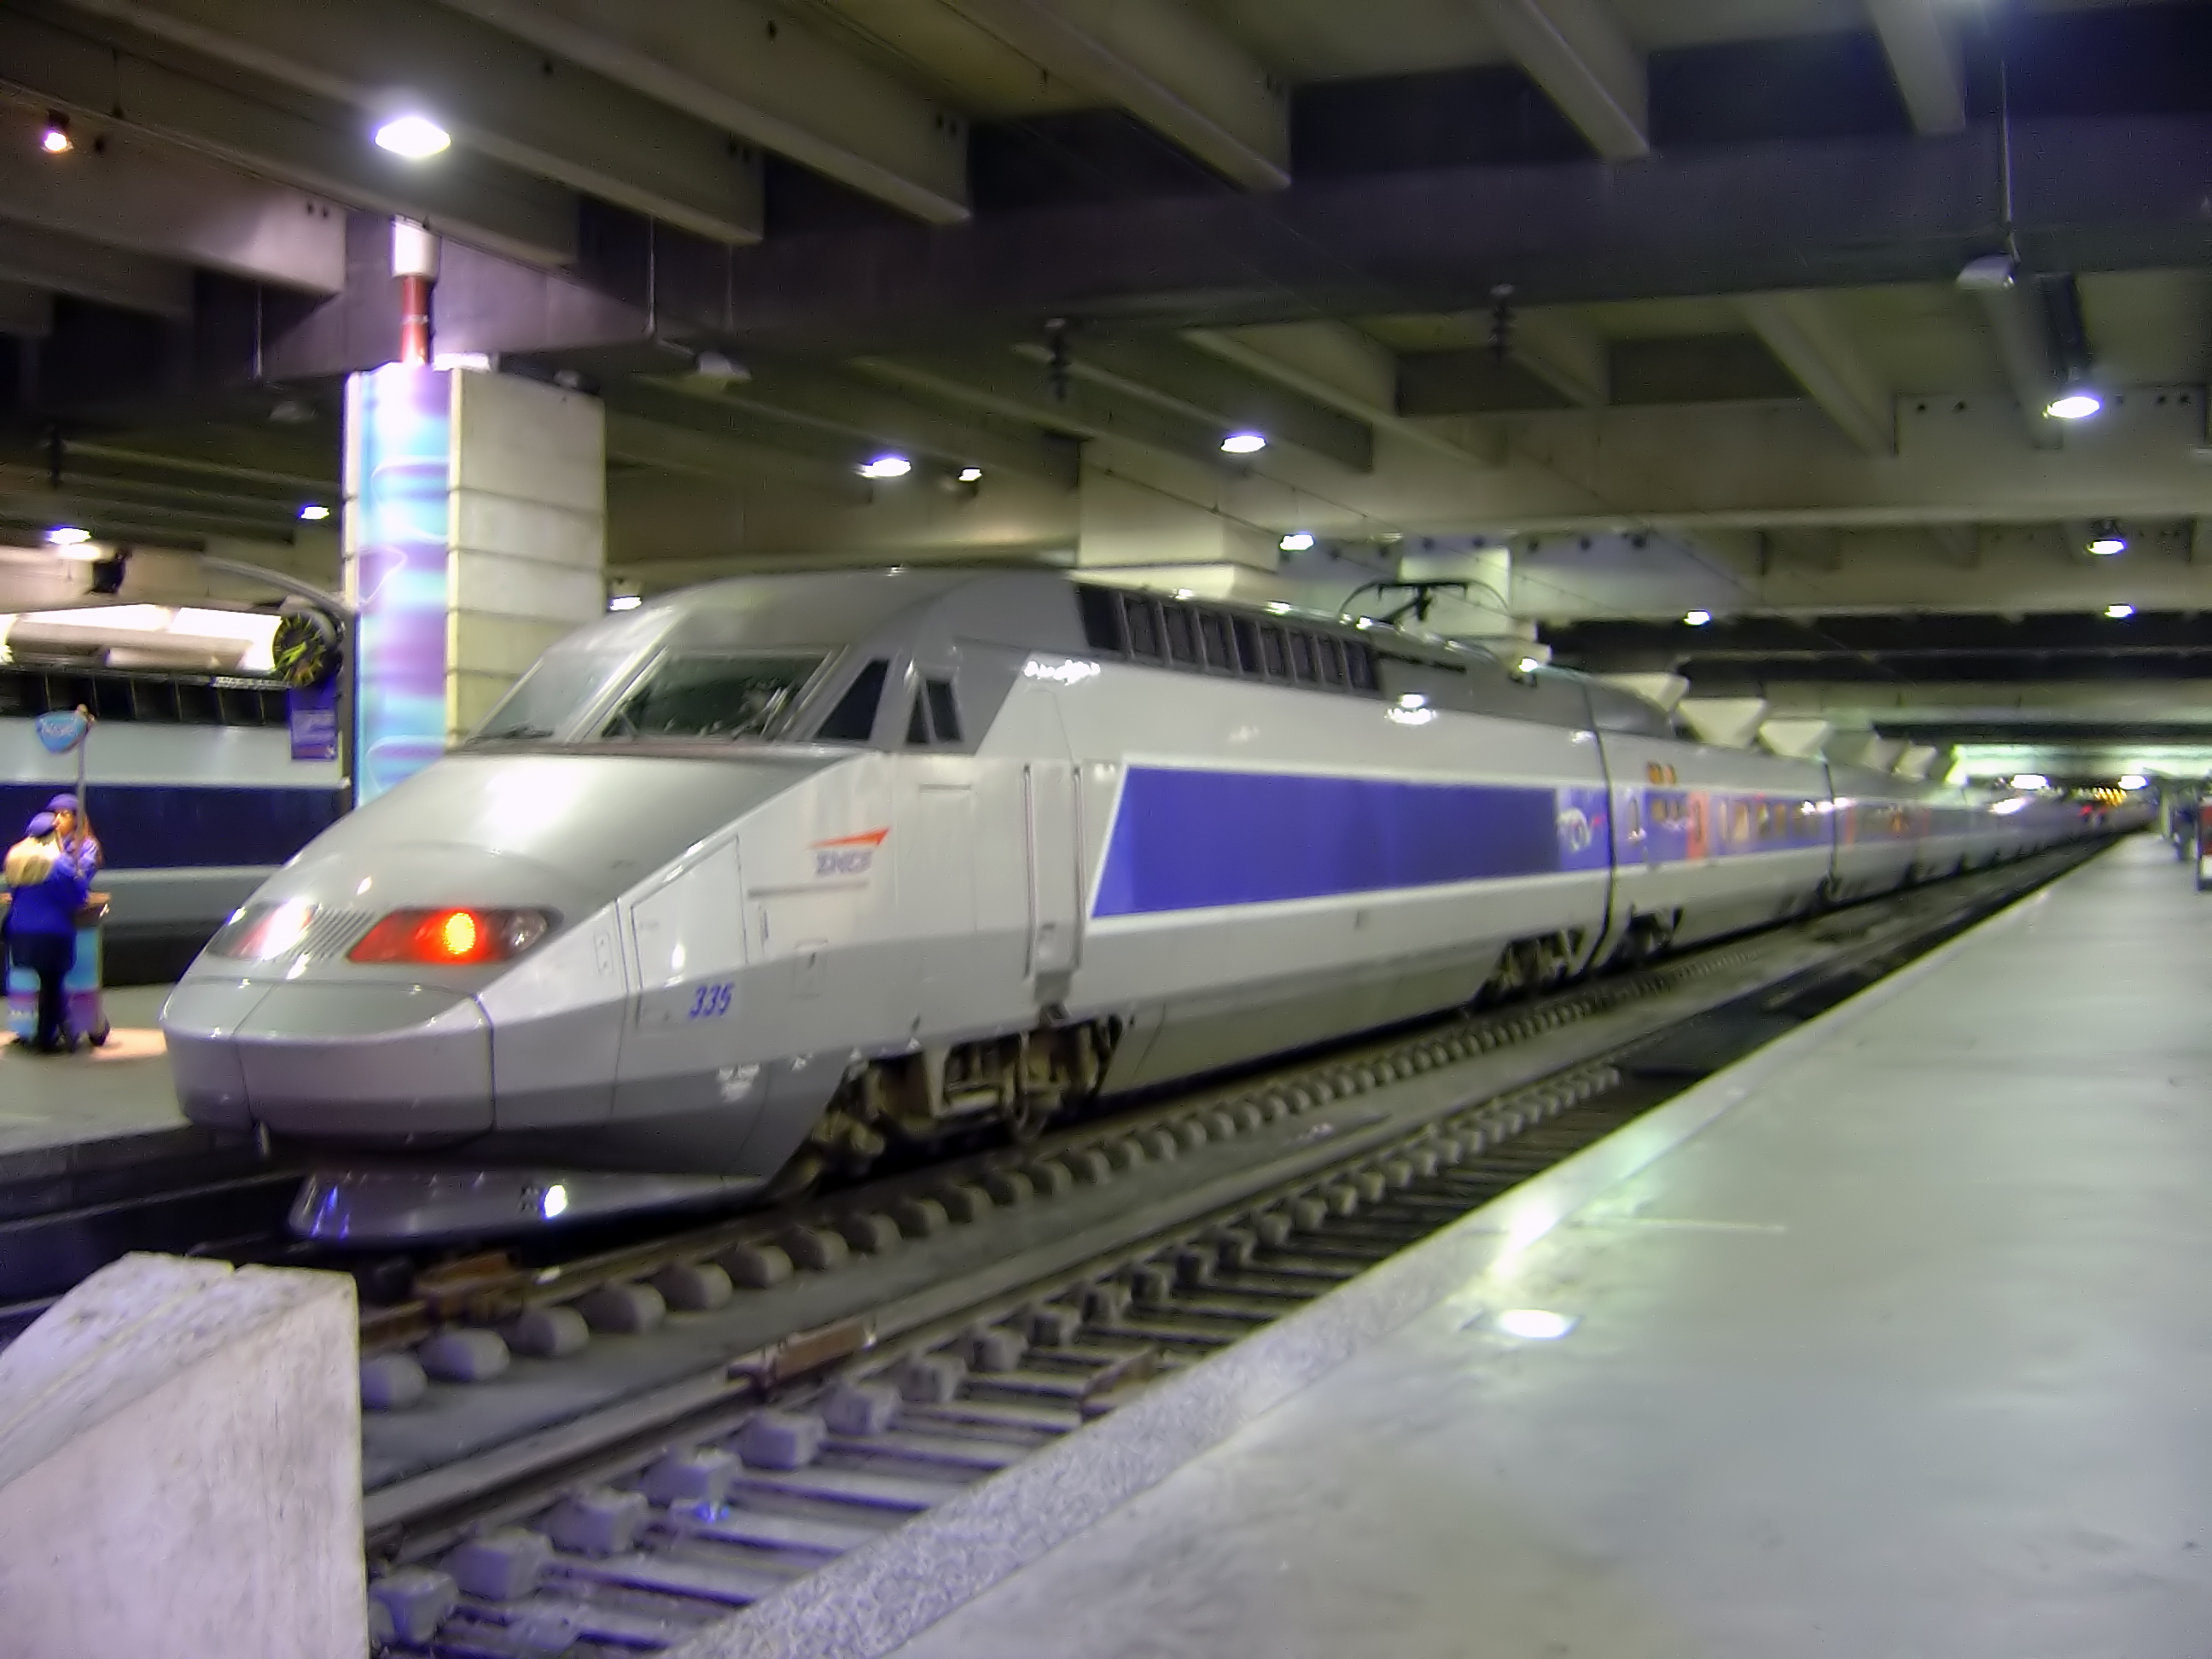 tgv-train-inside-gare-montparnasse-dsc08895.jpg